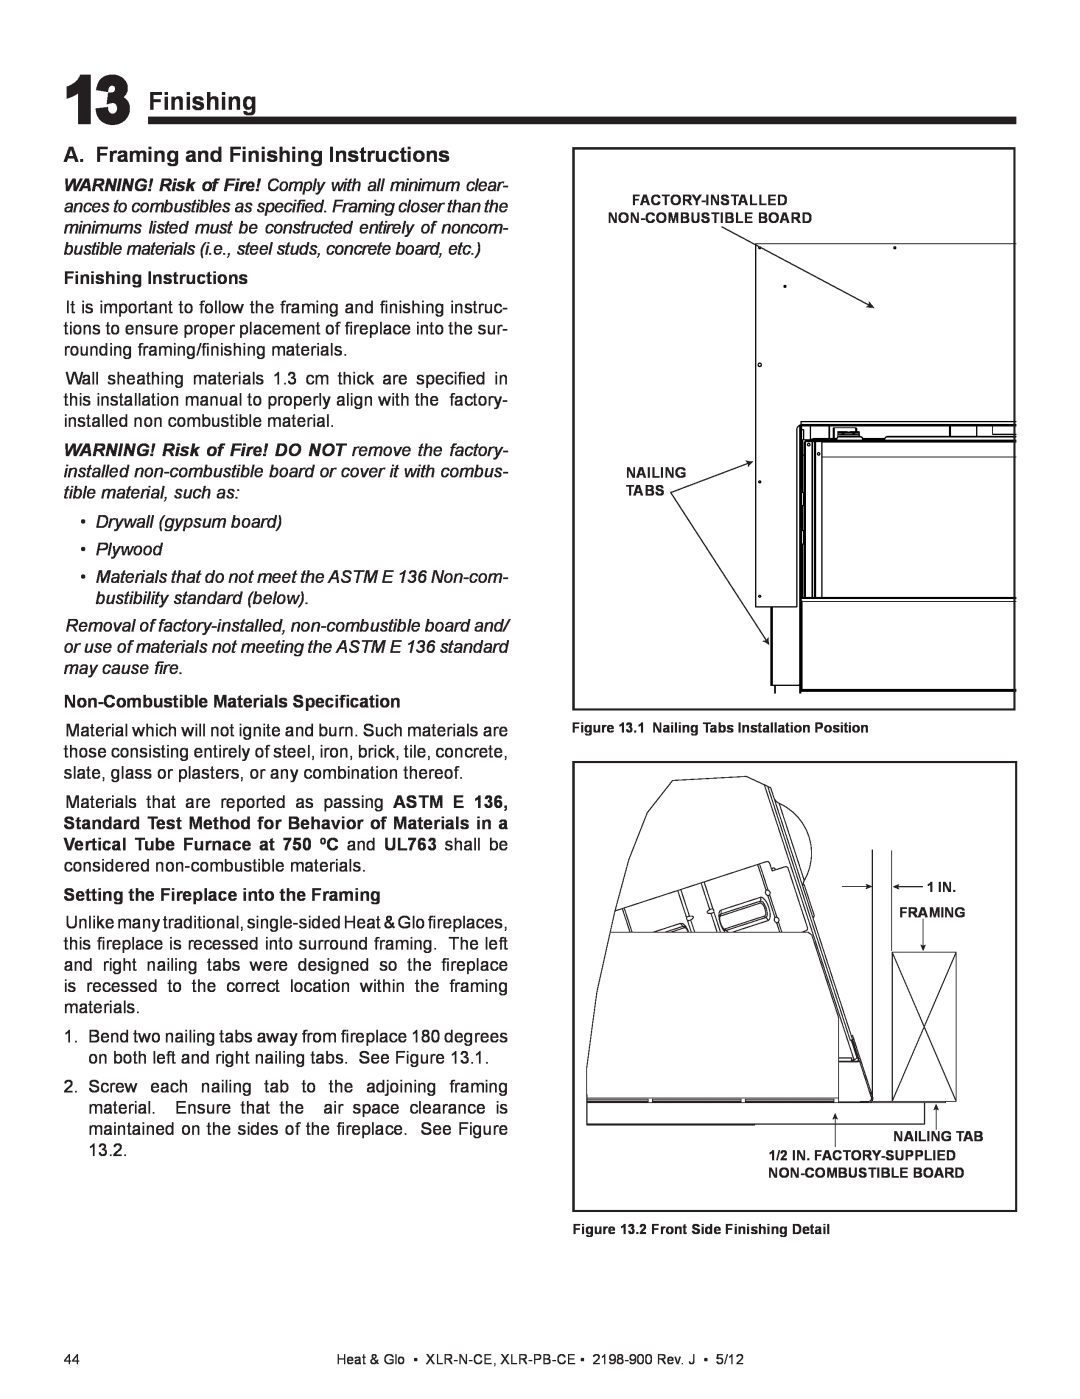 Heat & Glo LifeStyle XLR-N-CE, XLR-PB-CE manual A. Framing and Finishing Instructions, Drywall gypsum board Plywood 